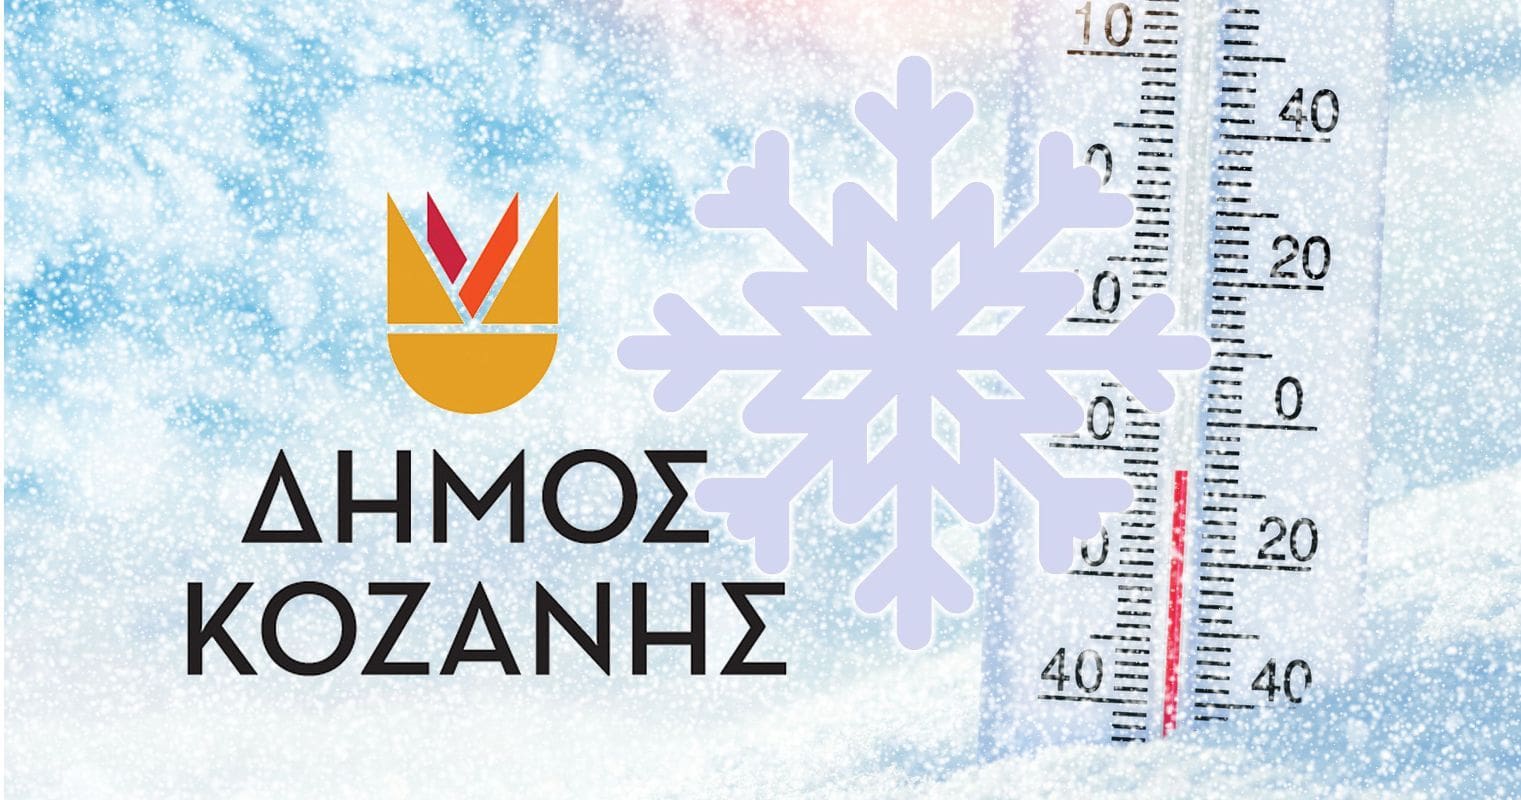 Δήμος Κοζάνης: Πώς να οδηγούμε σε συνθήκες παγετού και χιονόπτωσης - Συμβουλές και Οδηγίες